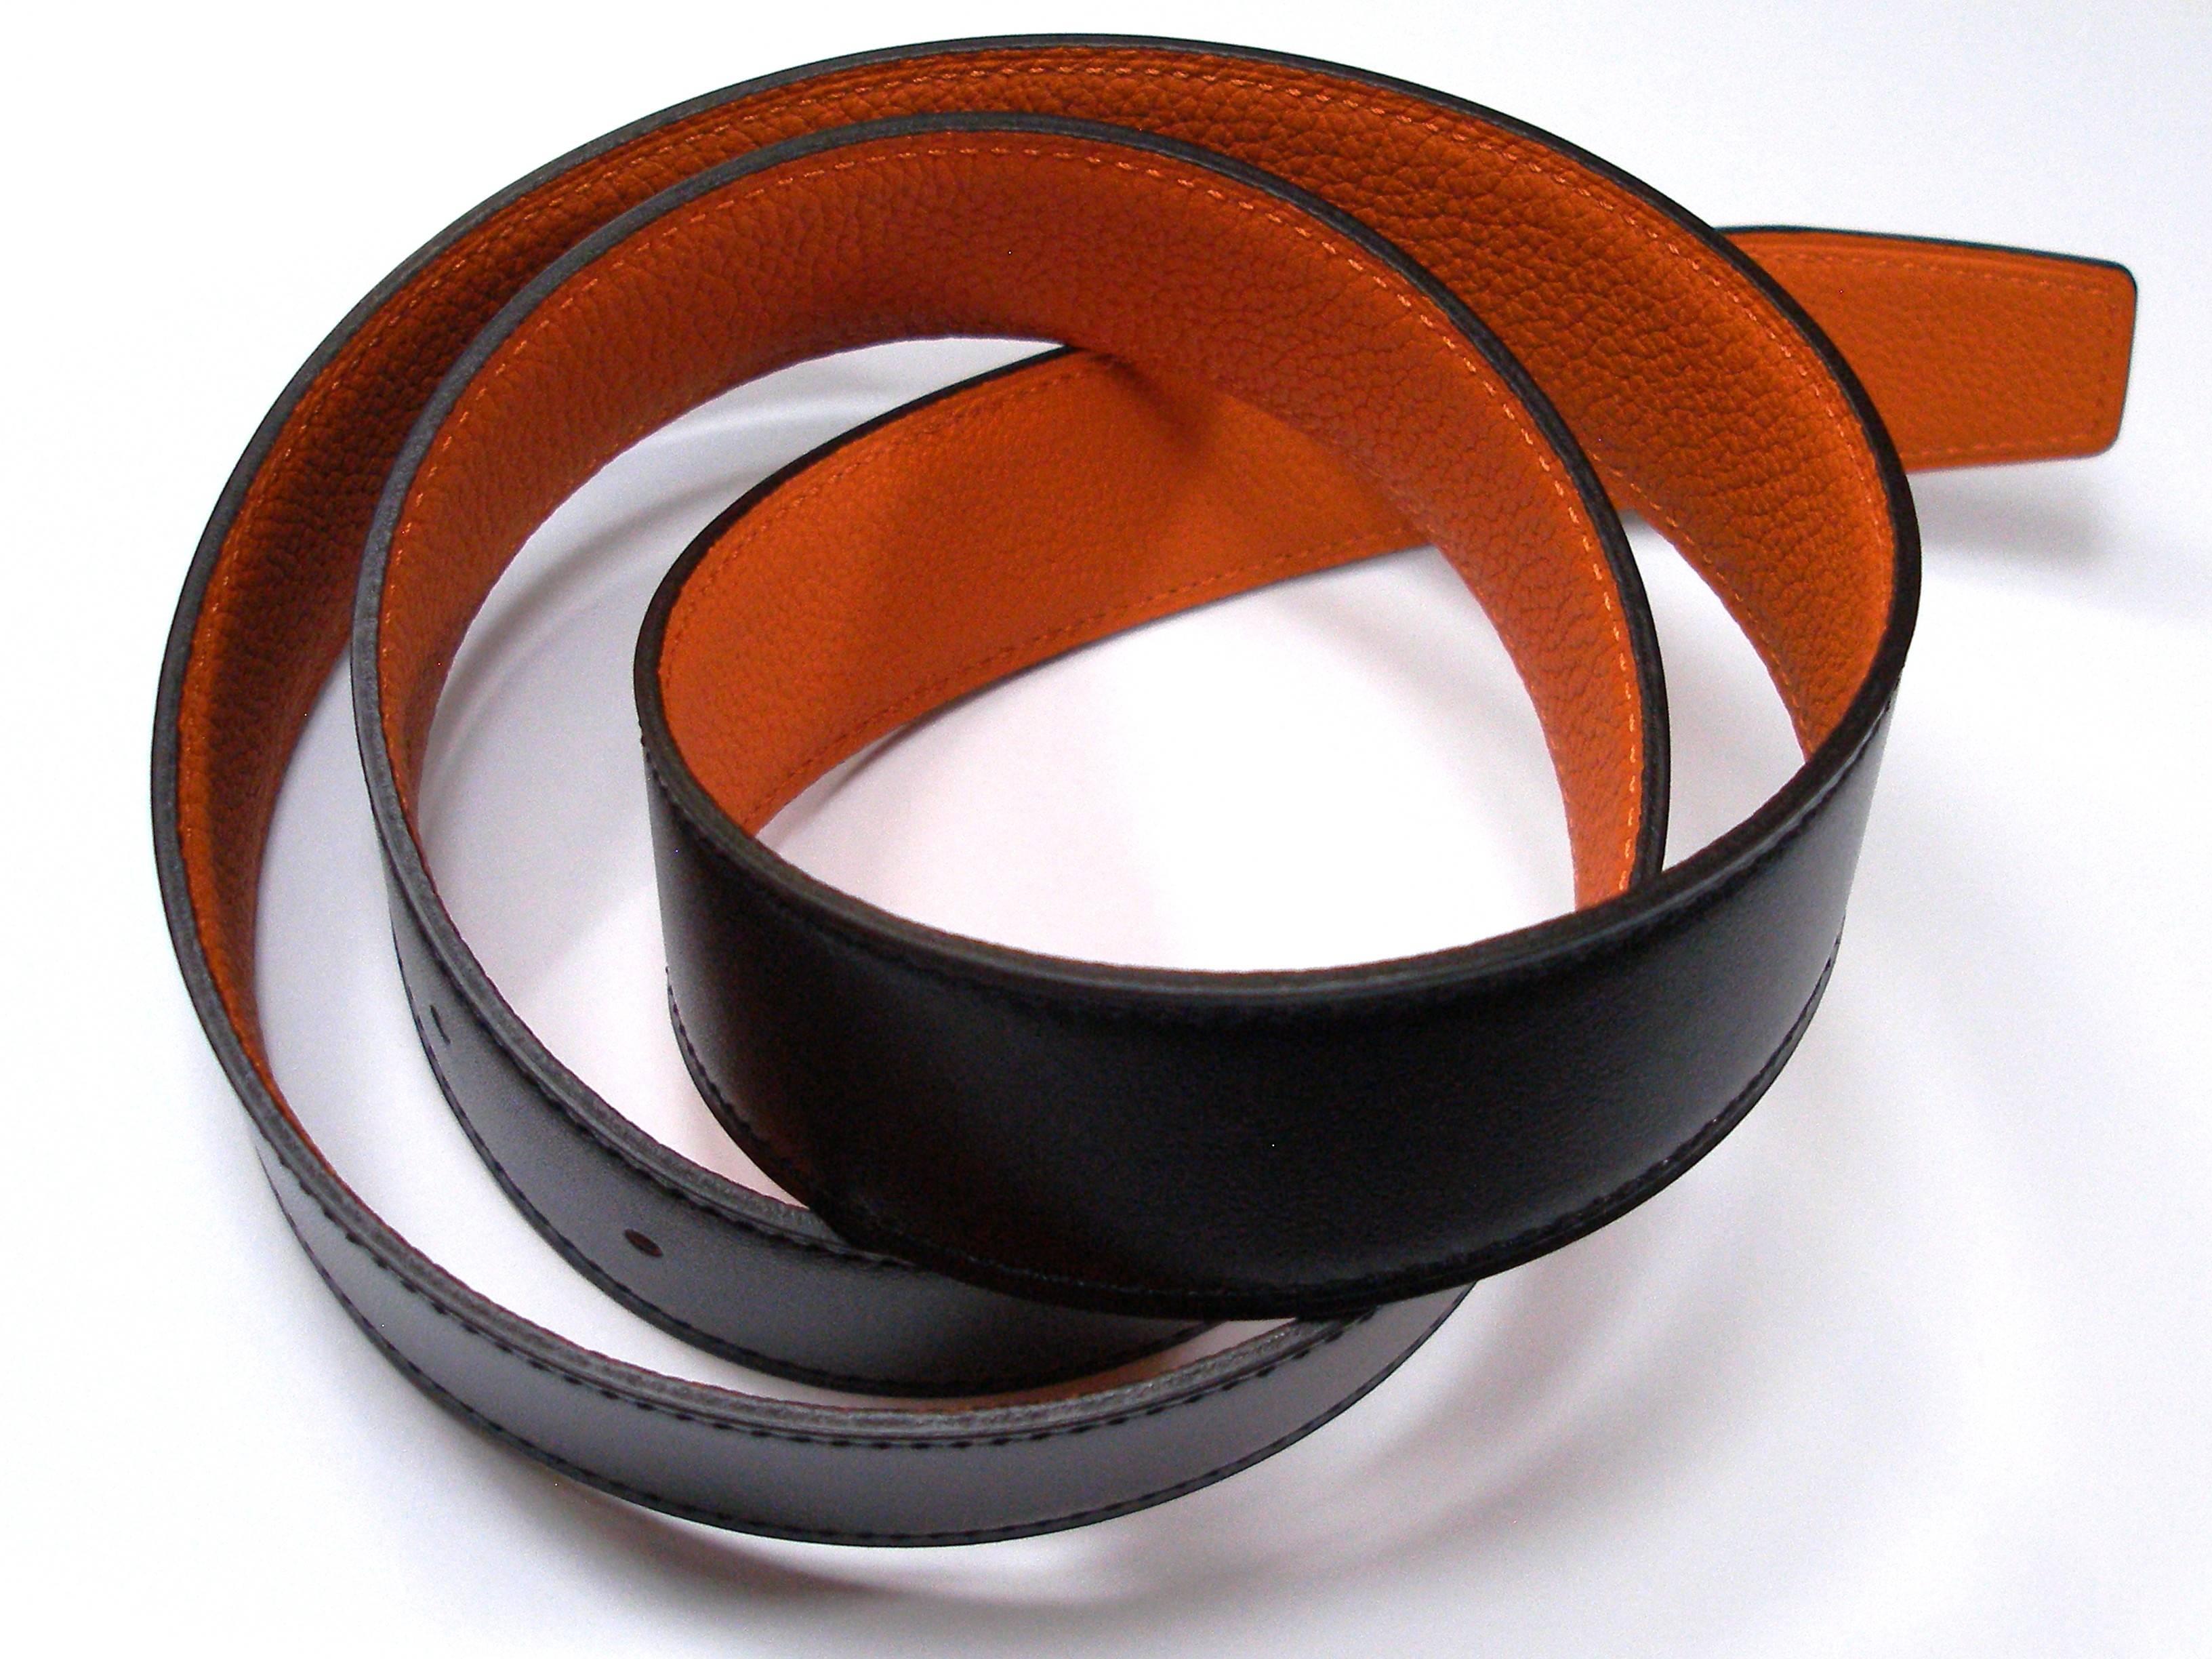 Hermés leather belt strap in 32 mm or 3.2 cm 
Men and Women unisex 
Reversible leather strap
Veau / togo 
Taille : 90 cm 
Color : noir/ réversible orange
